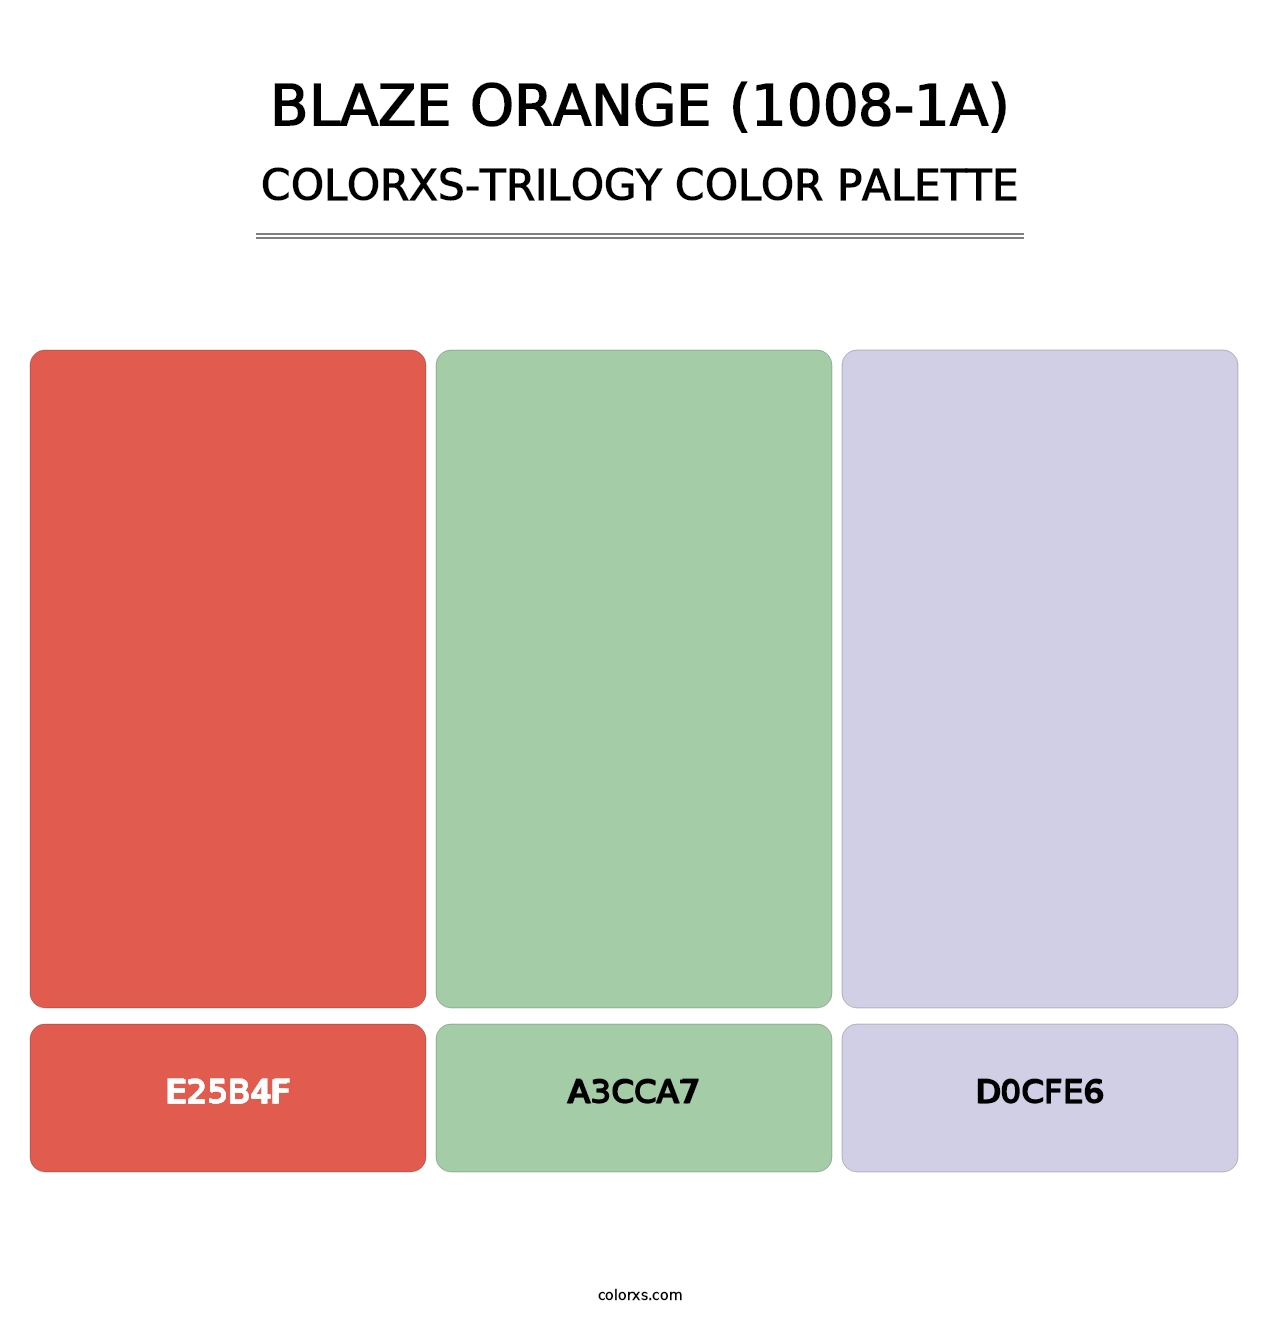 Blaze Orange (1008-1A) - Colorxs Trilogy Palette